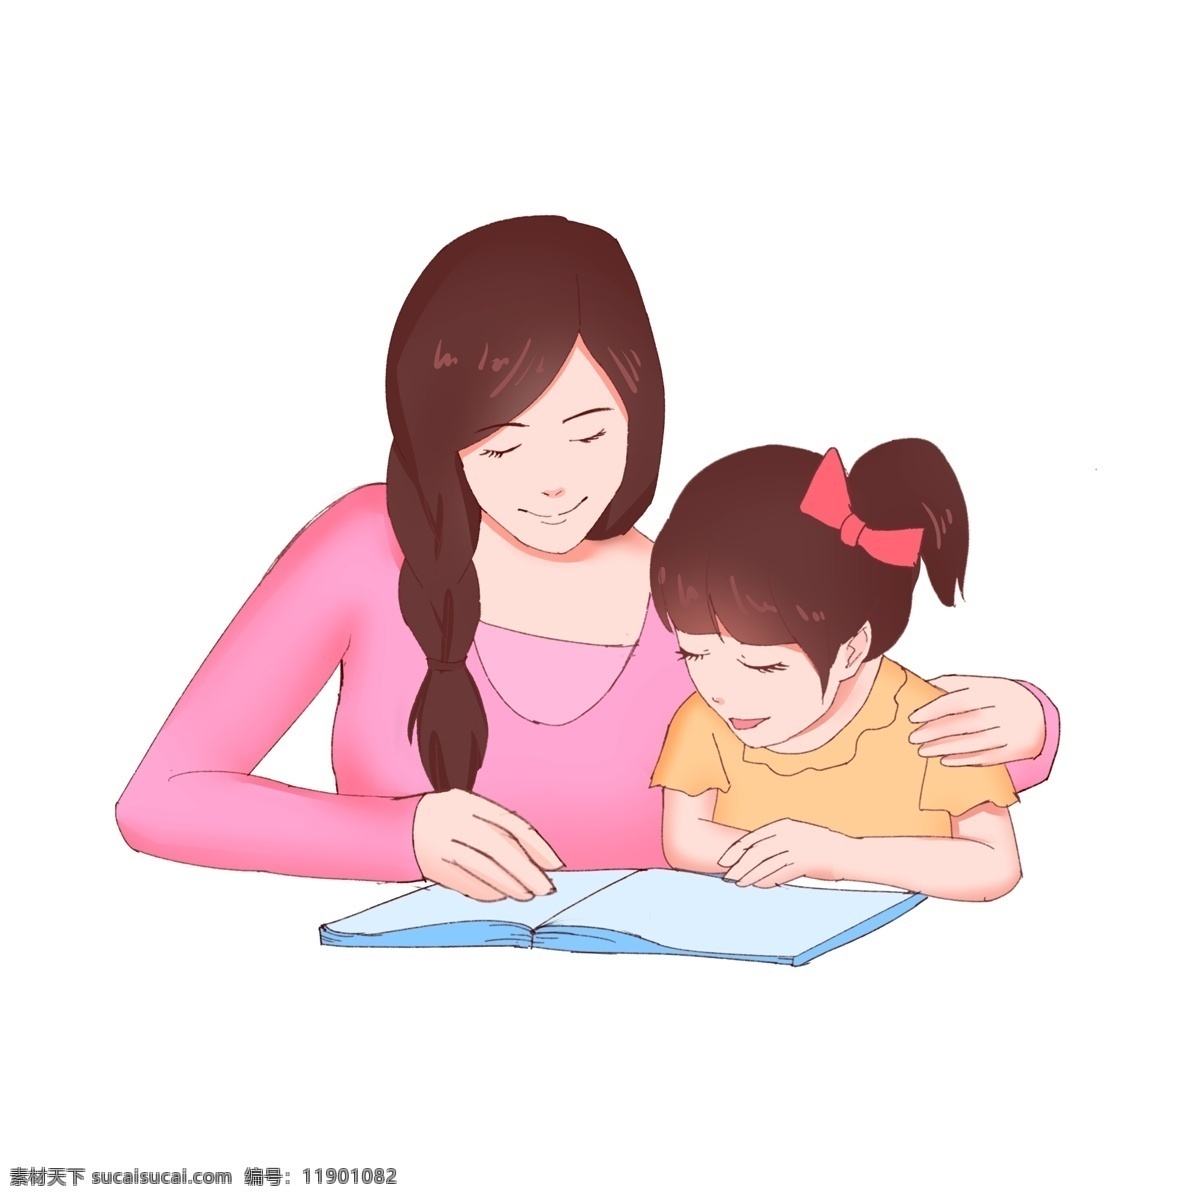 陪伴 读书 拥抱 母爱 节日 文化艺术 节日庆祝